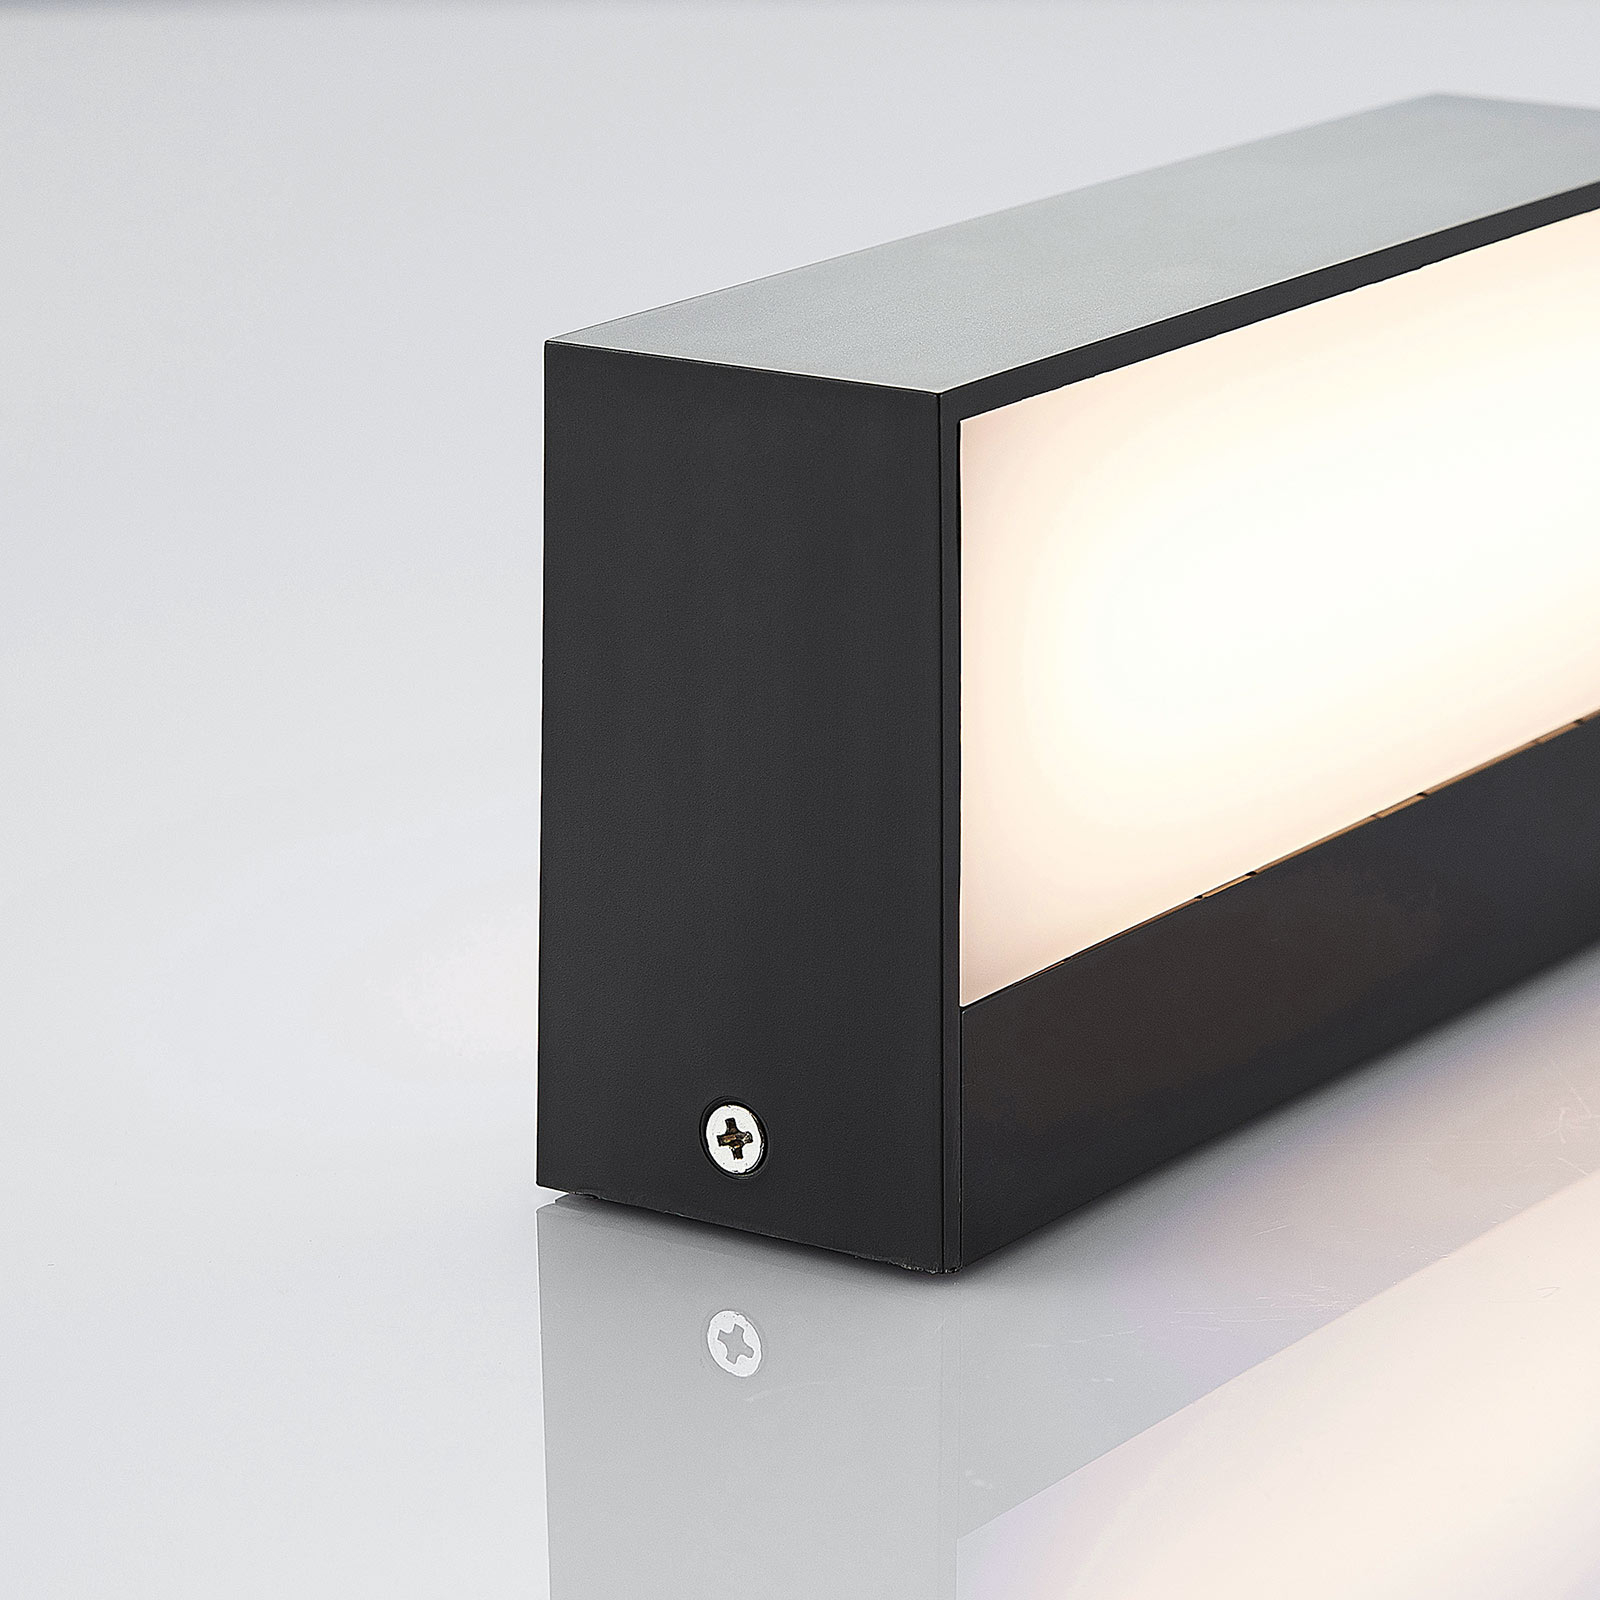 LED kültéri fali lámpa Nienke, IP65, 17 cm